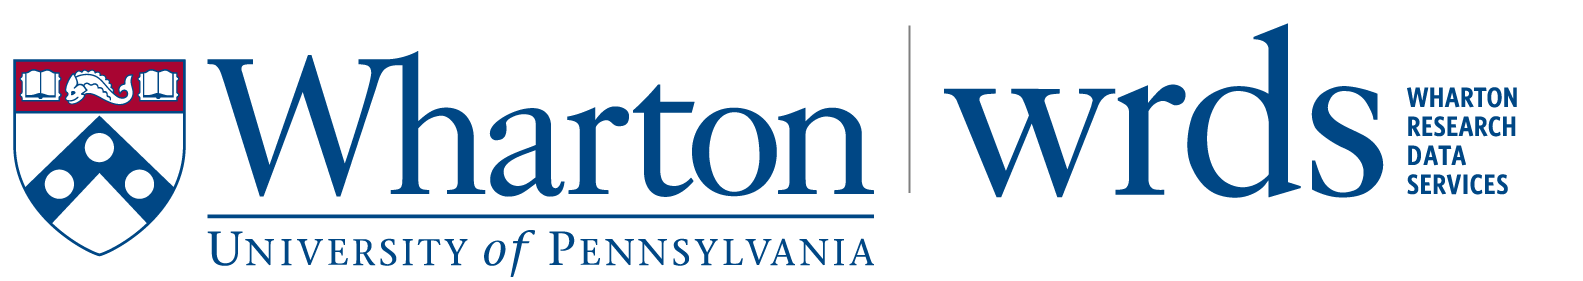 Wharton School of the University of Pennsylvania, WRDS Wharton Research Data Services logo